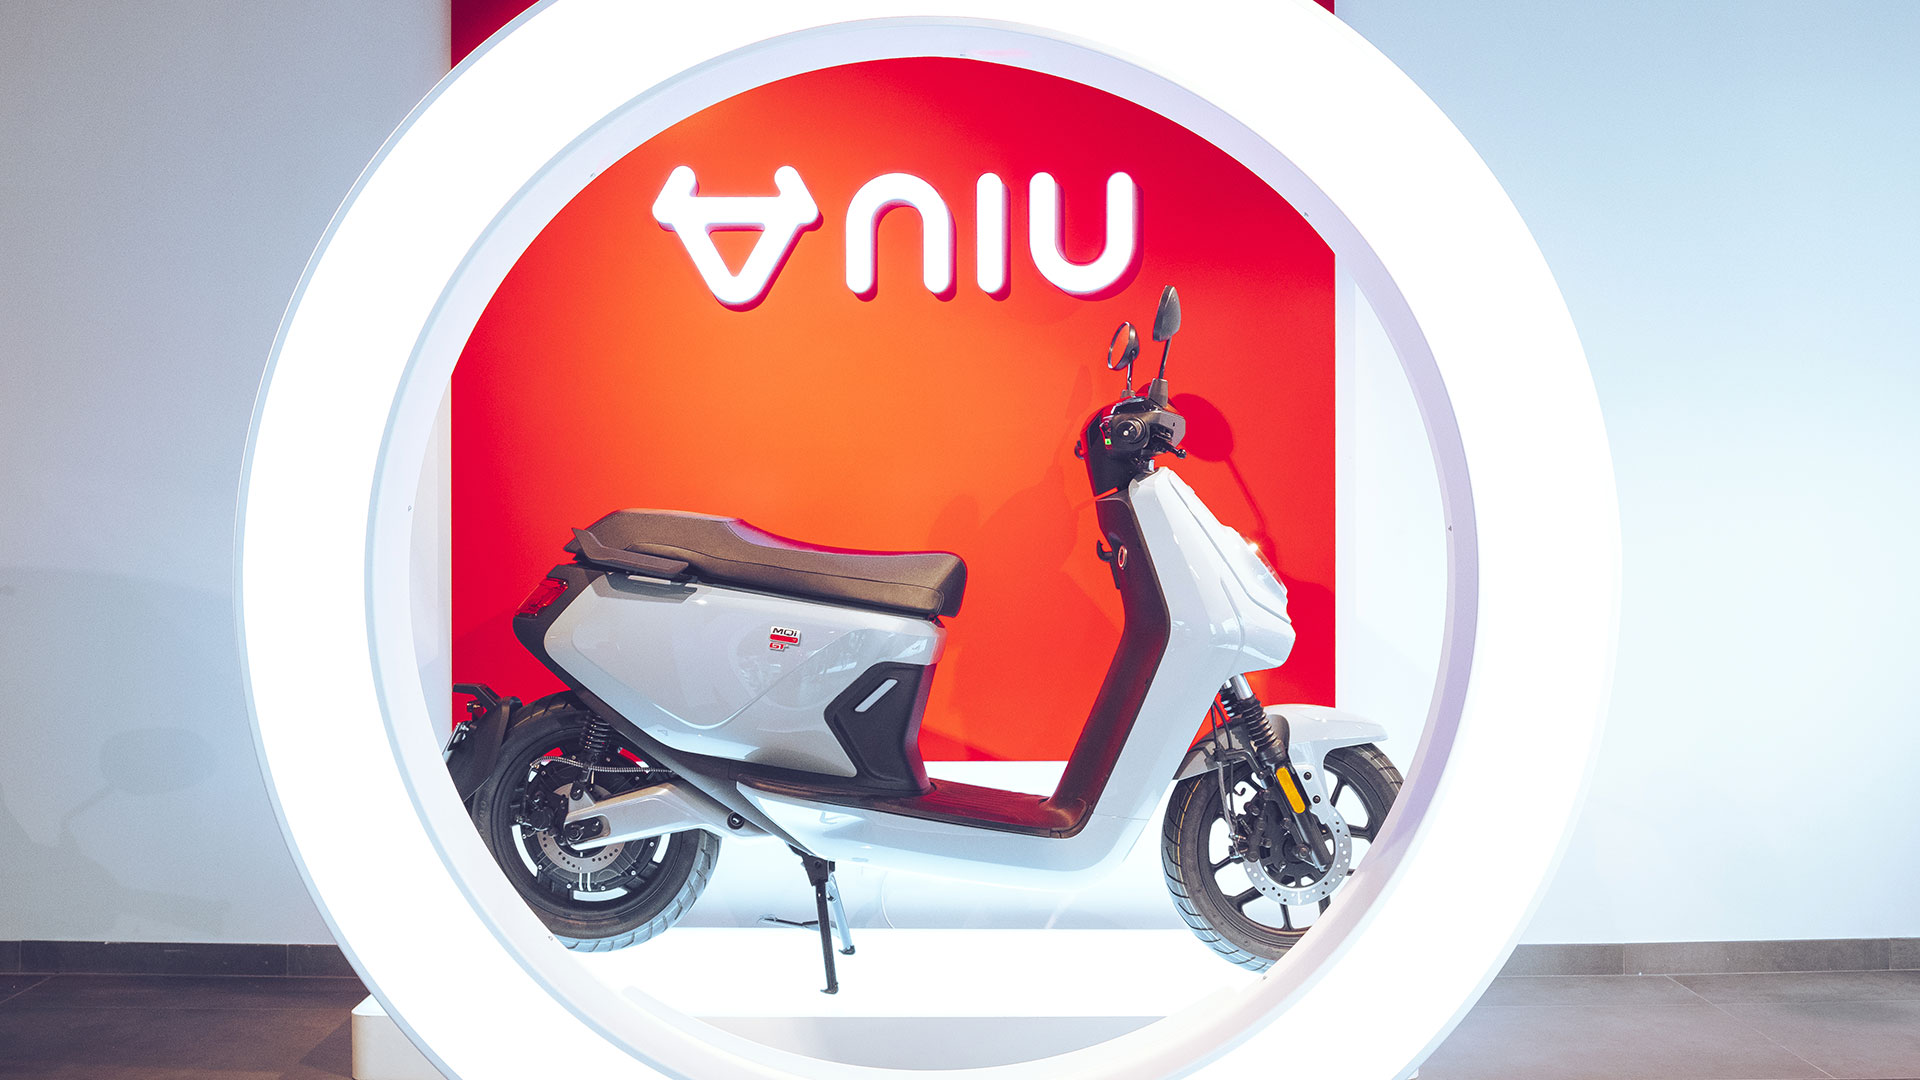 NIU acudirá a Expoelectric Barcelona con toda su gama de scooters y patinetes eléctricos